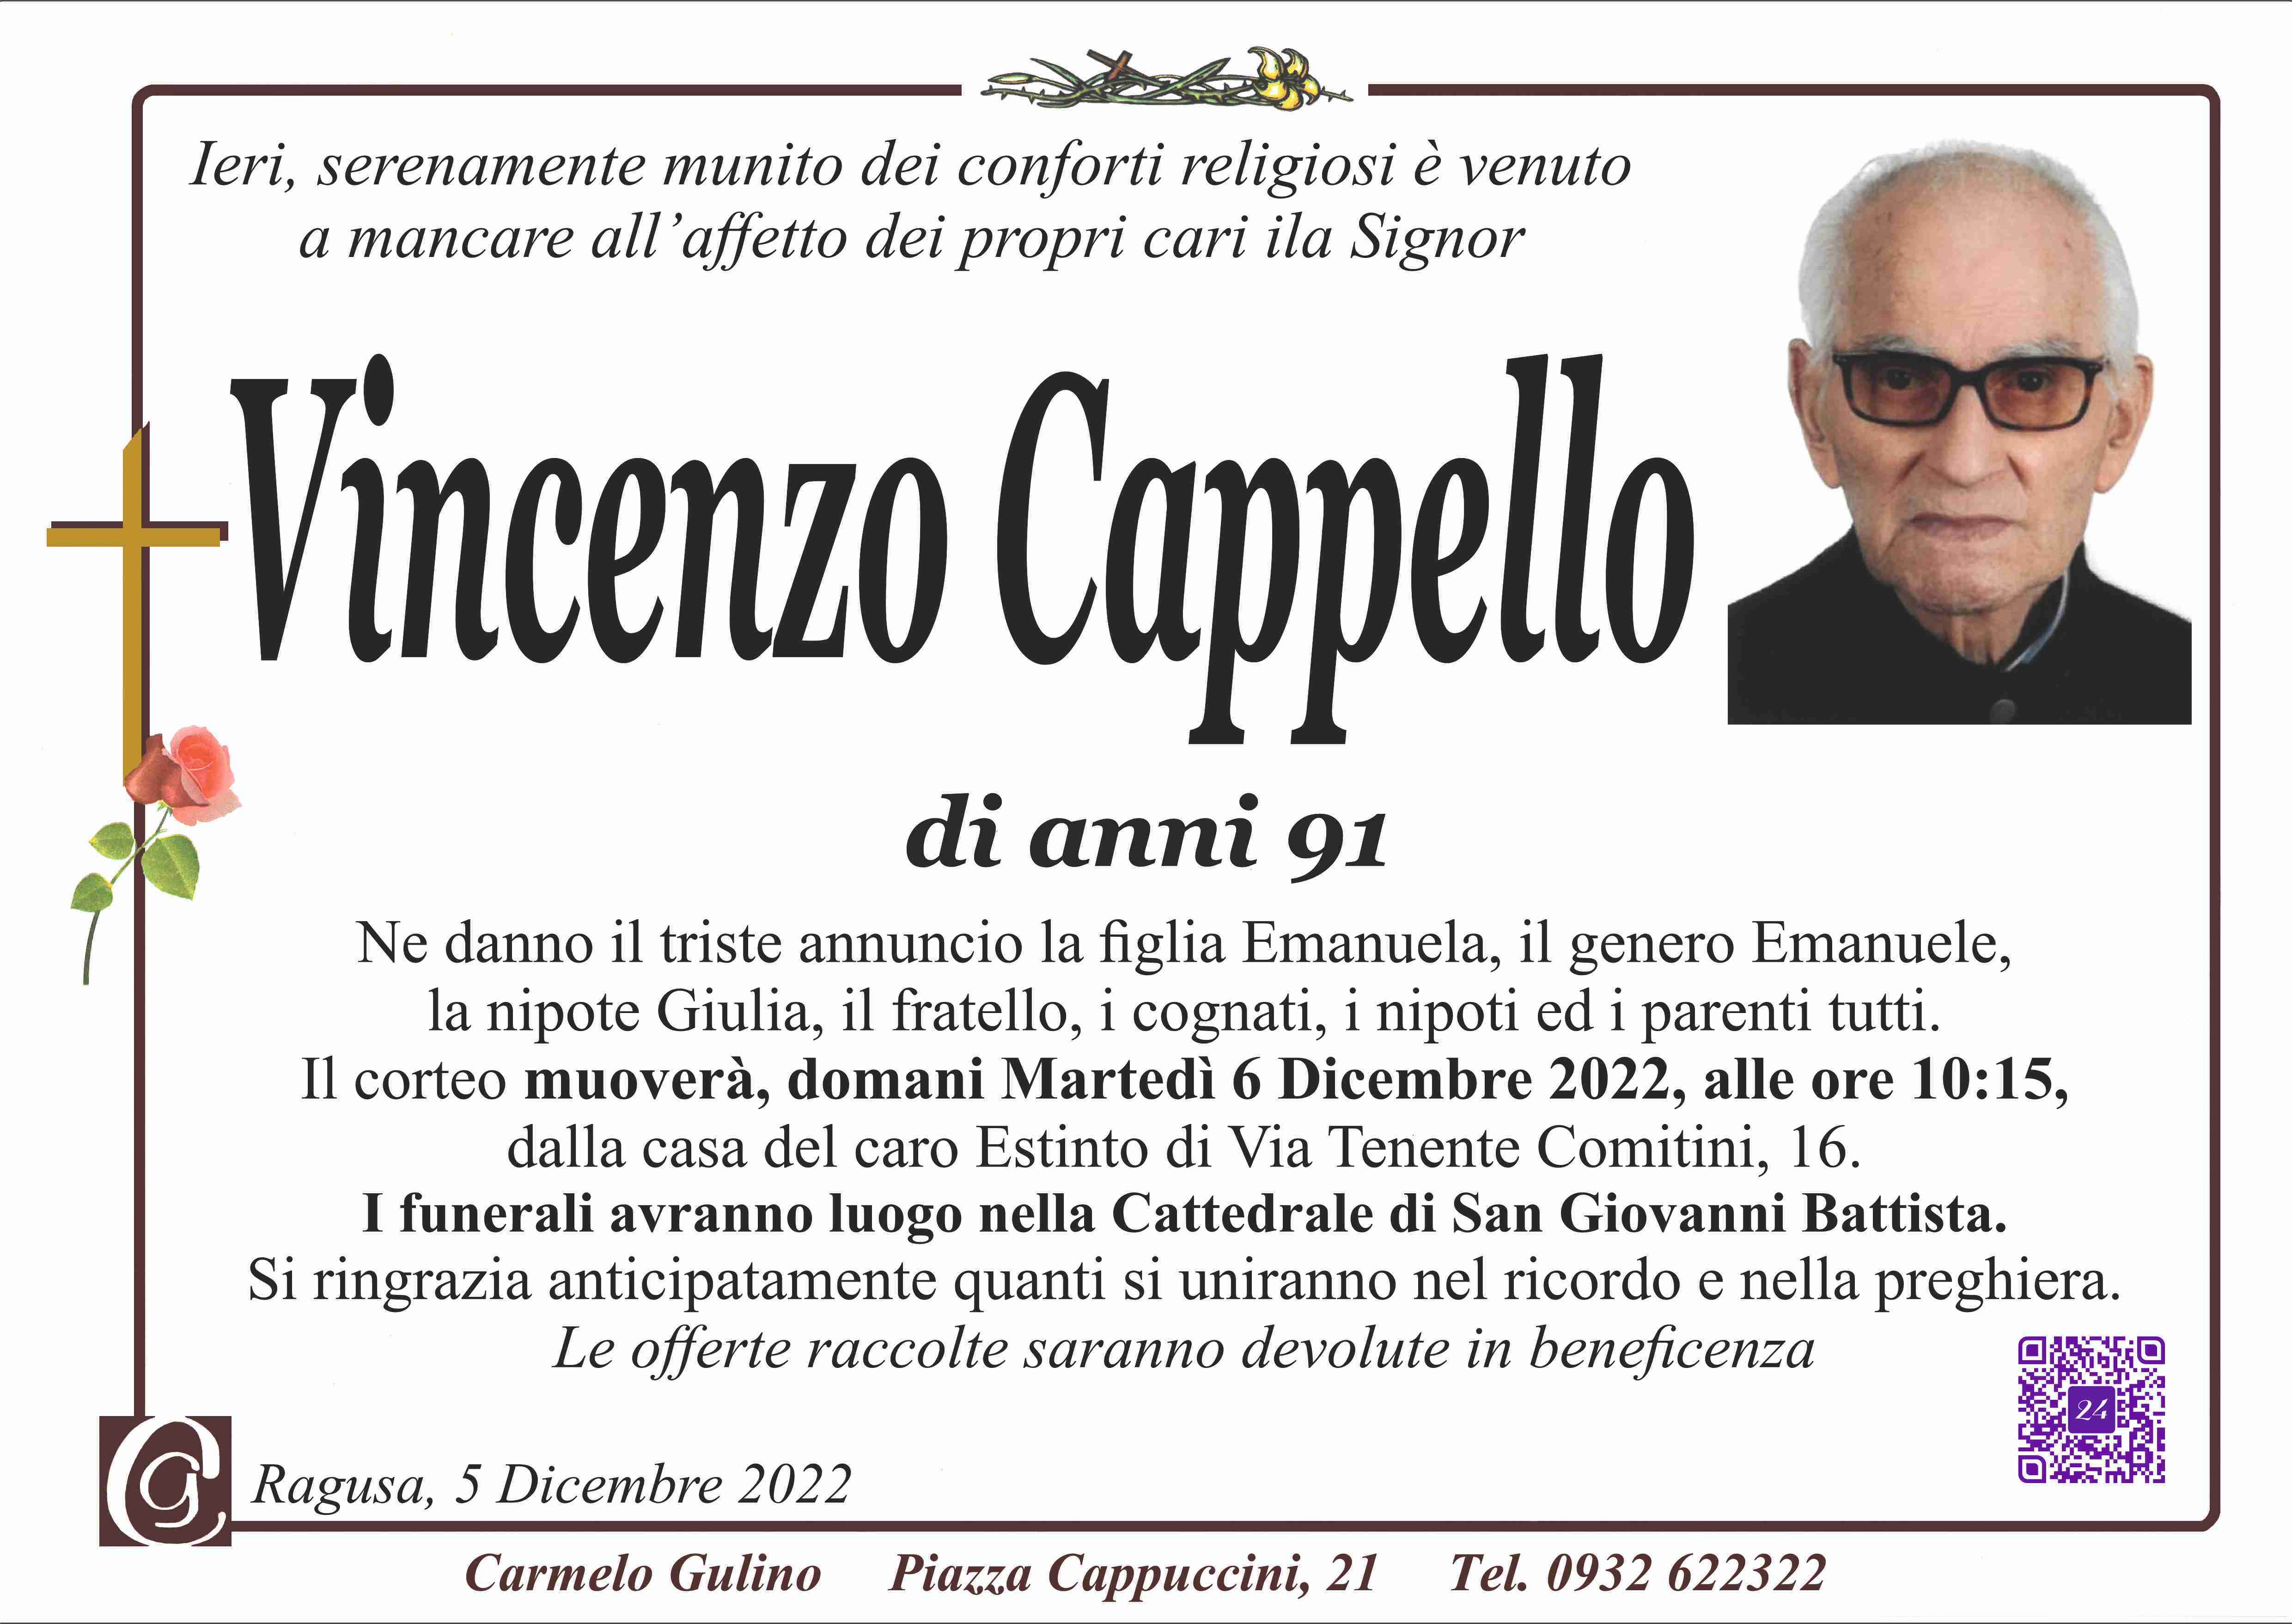 Vincenzo Cappello